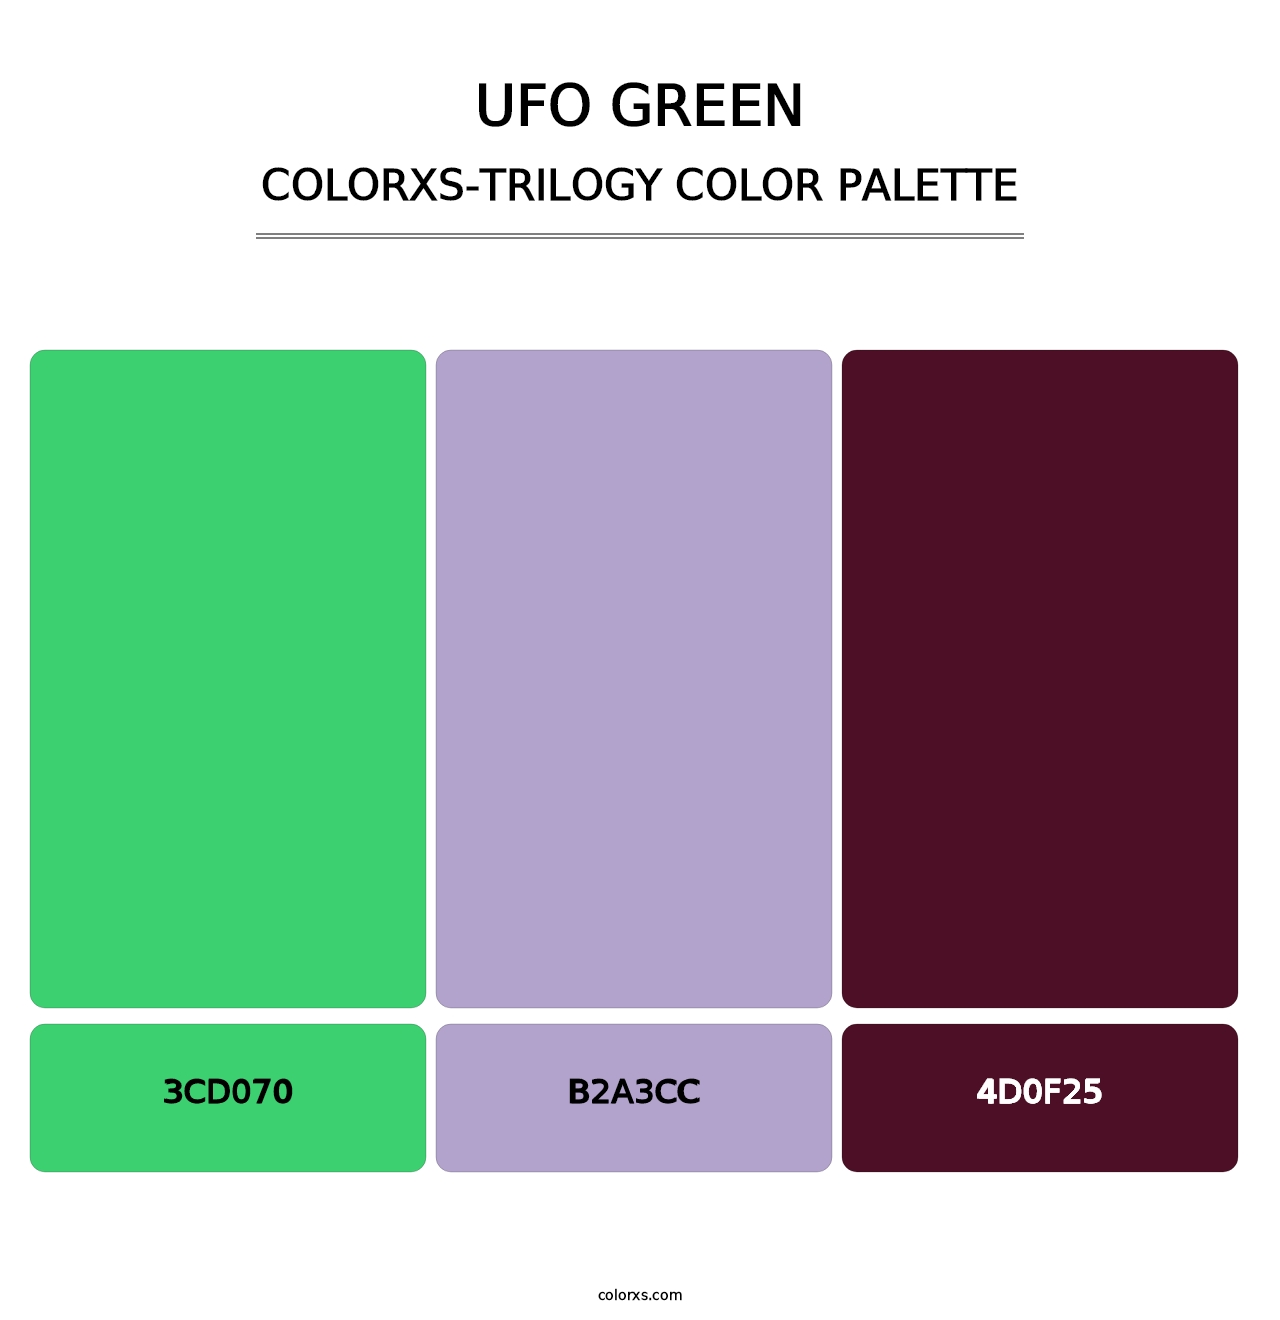 UFO Green - Colorxs Trilogy Palette